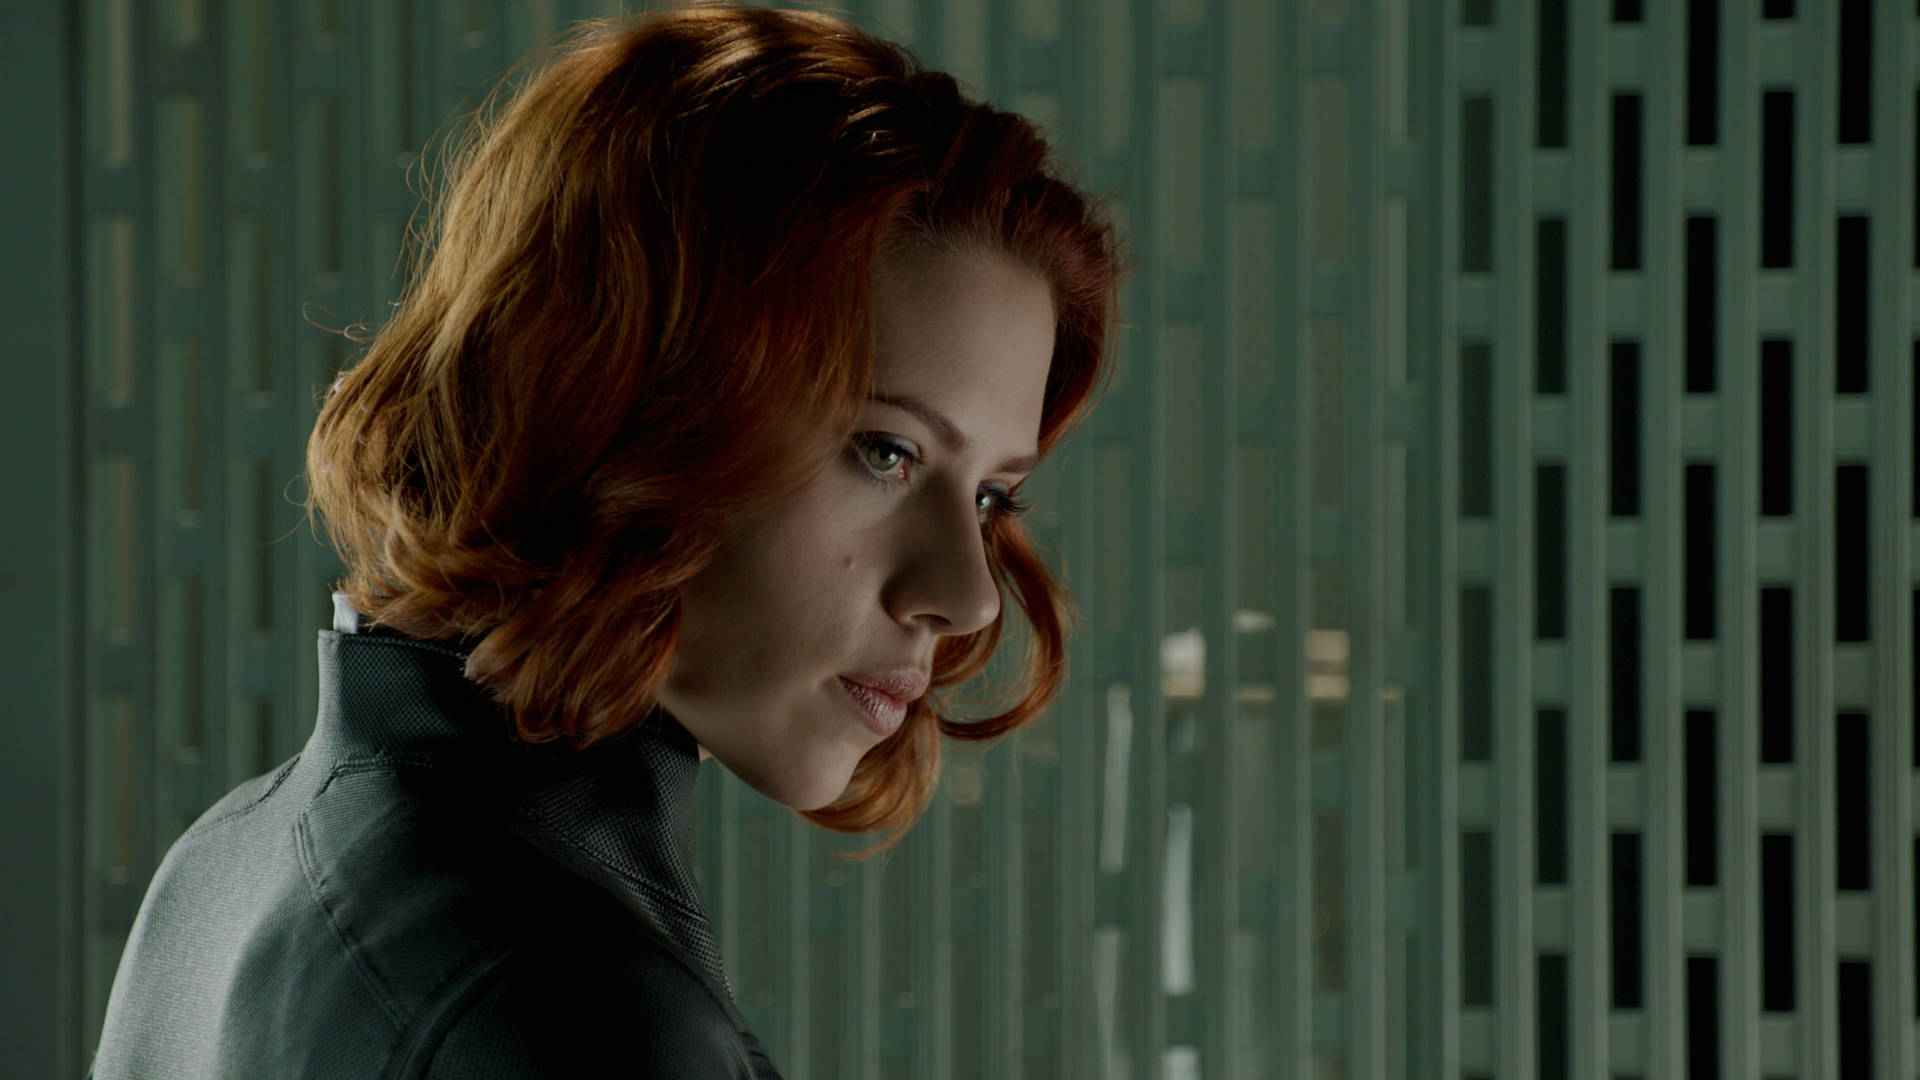 Scarlett Johansson as Black Widow. Wallpaper